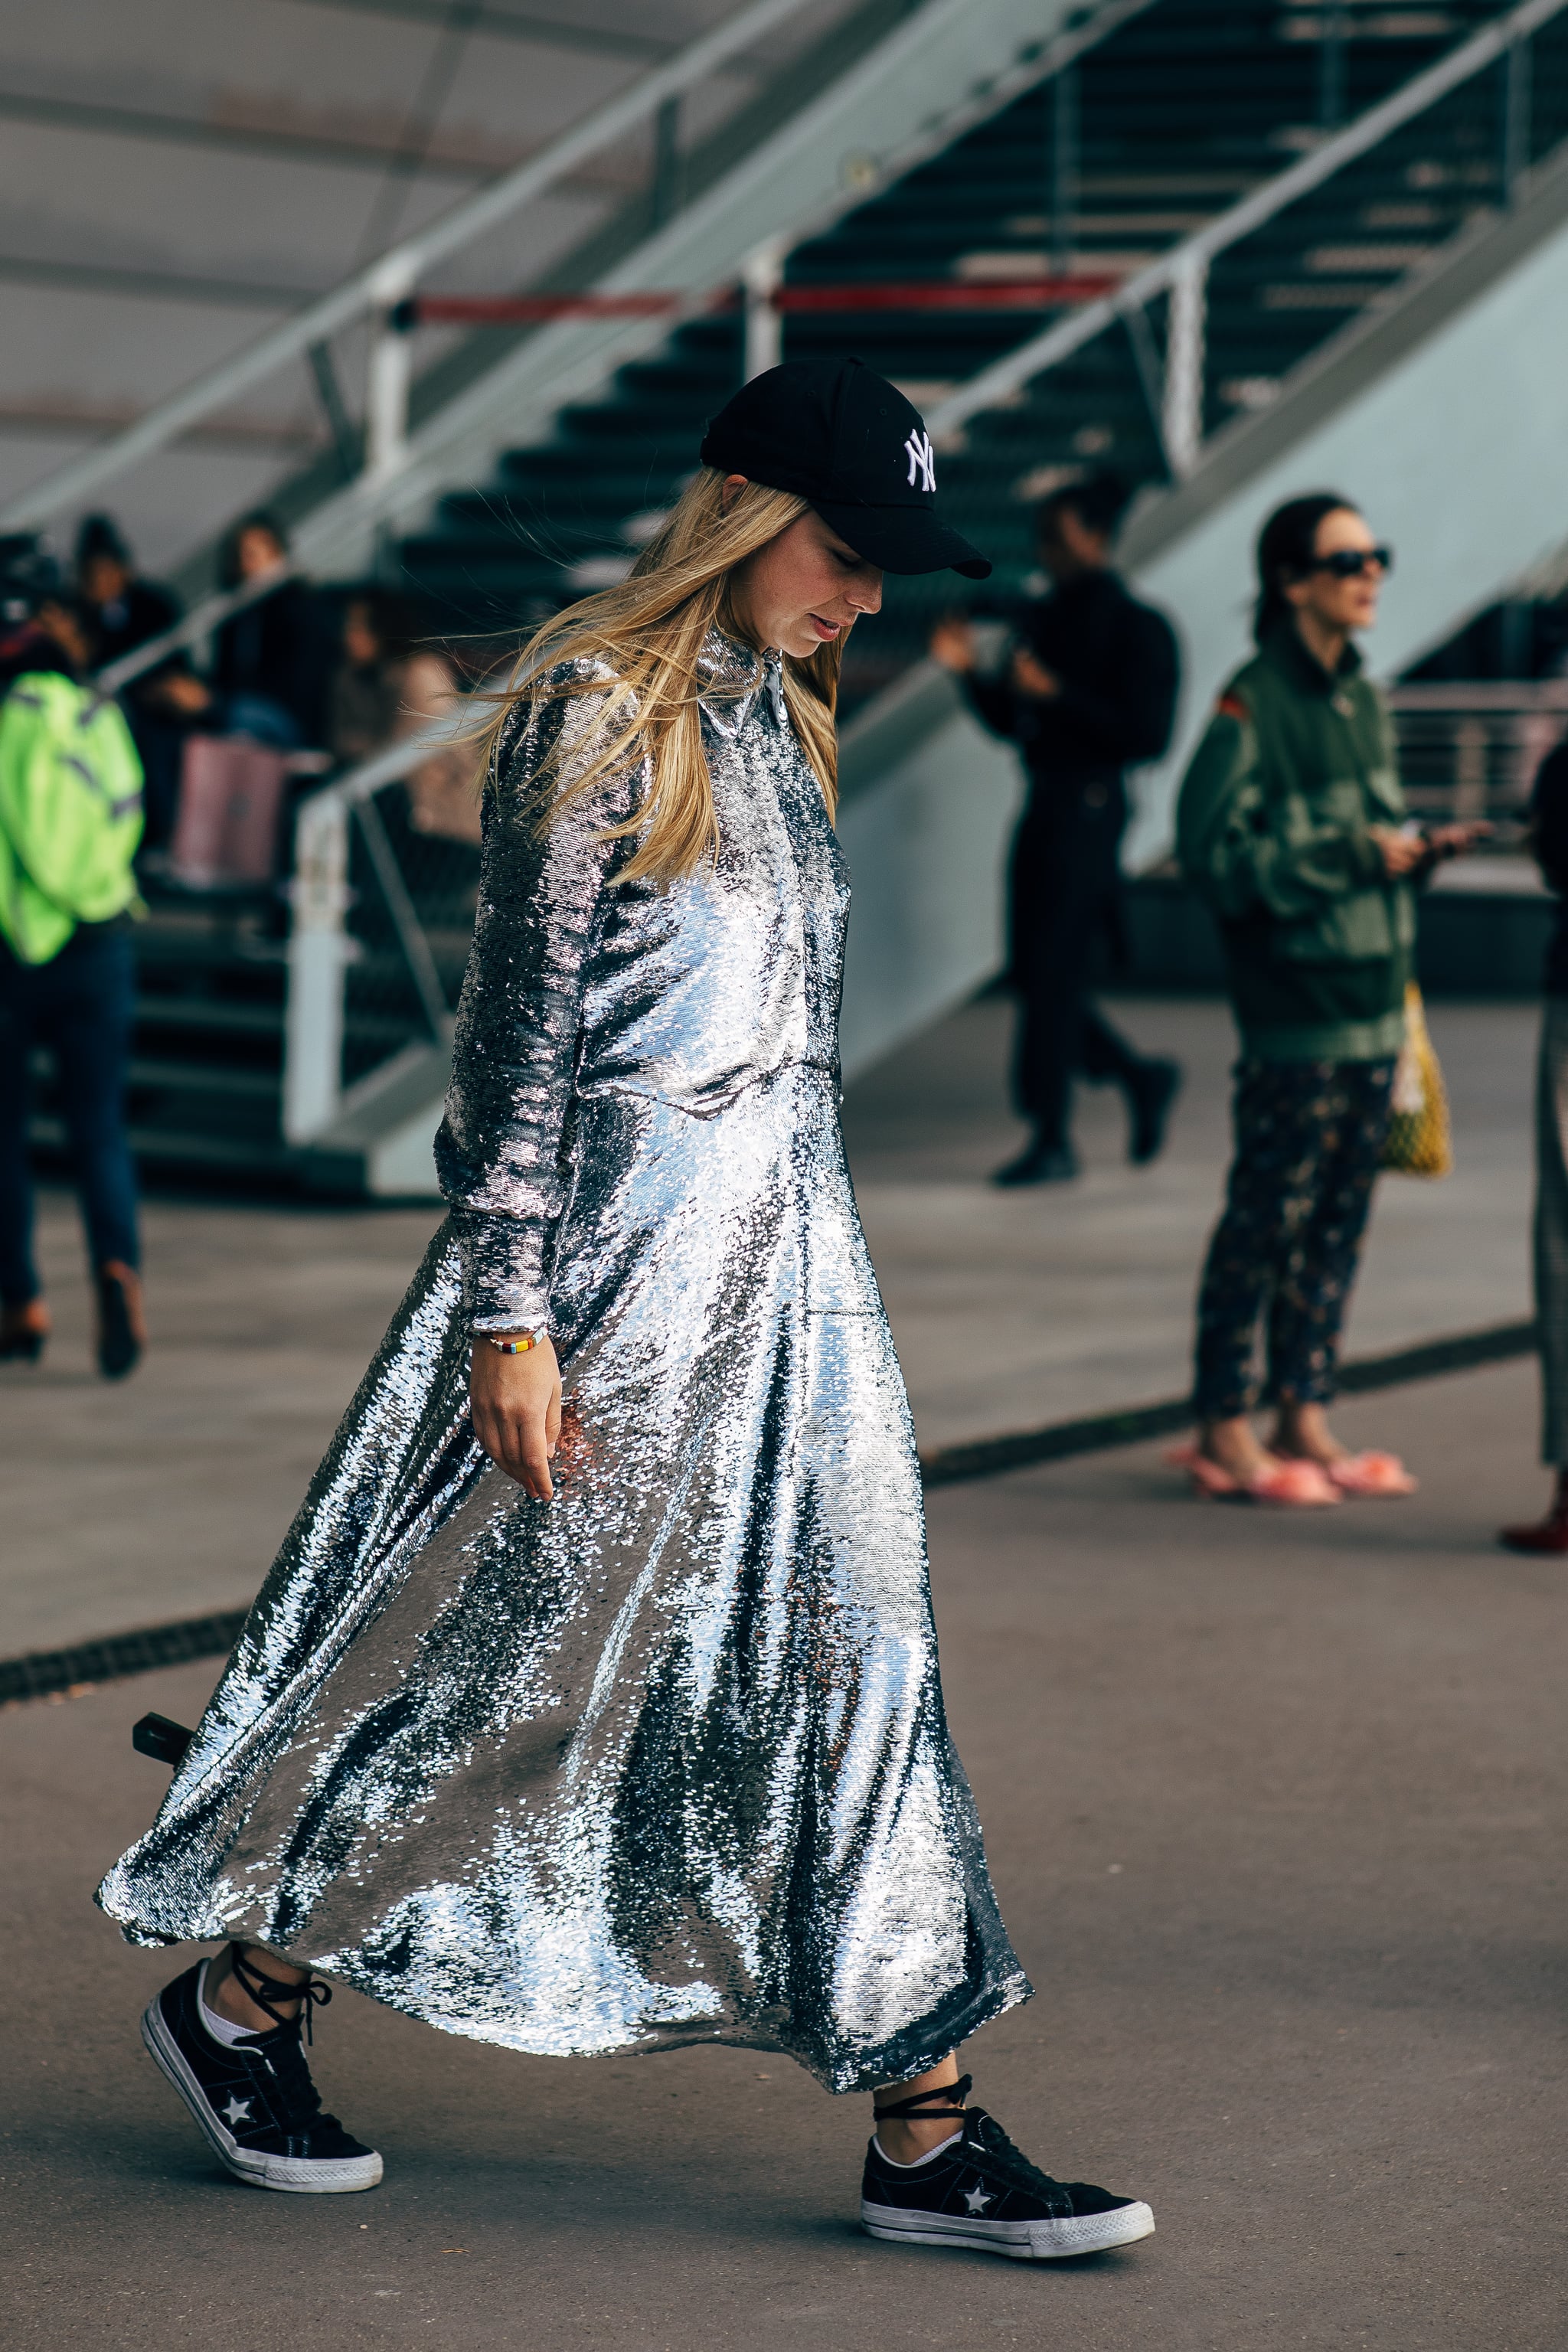 Charlotte Groeneveld wearing silver dress, Louis Vuitton sneakers